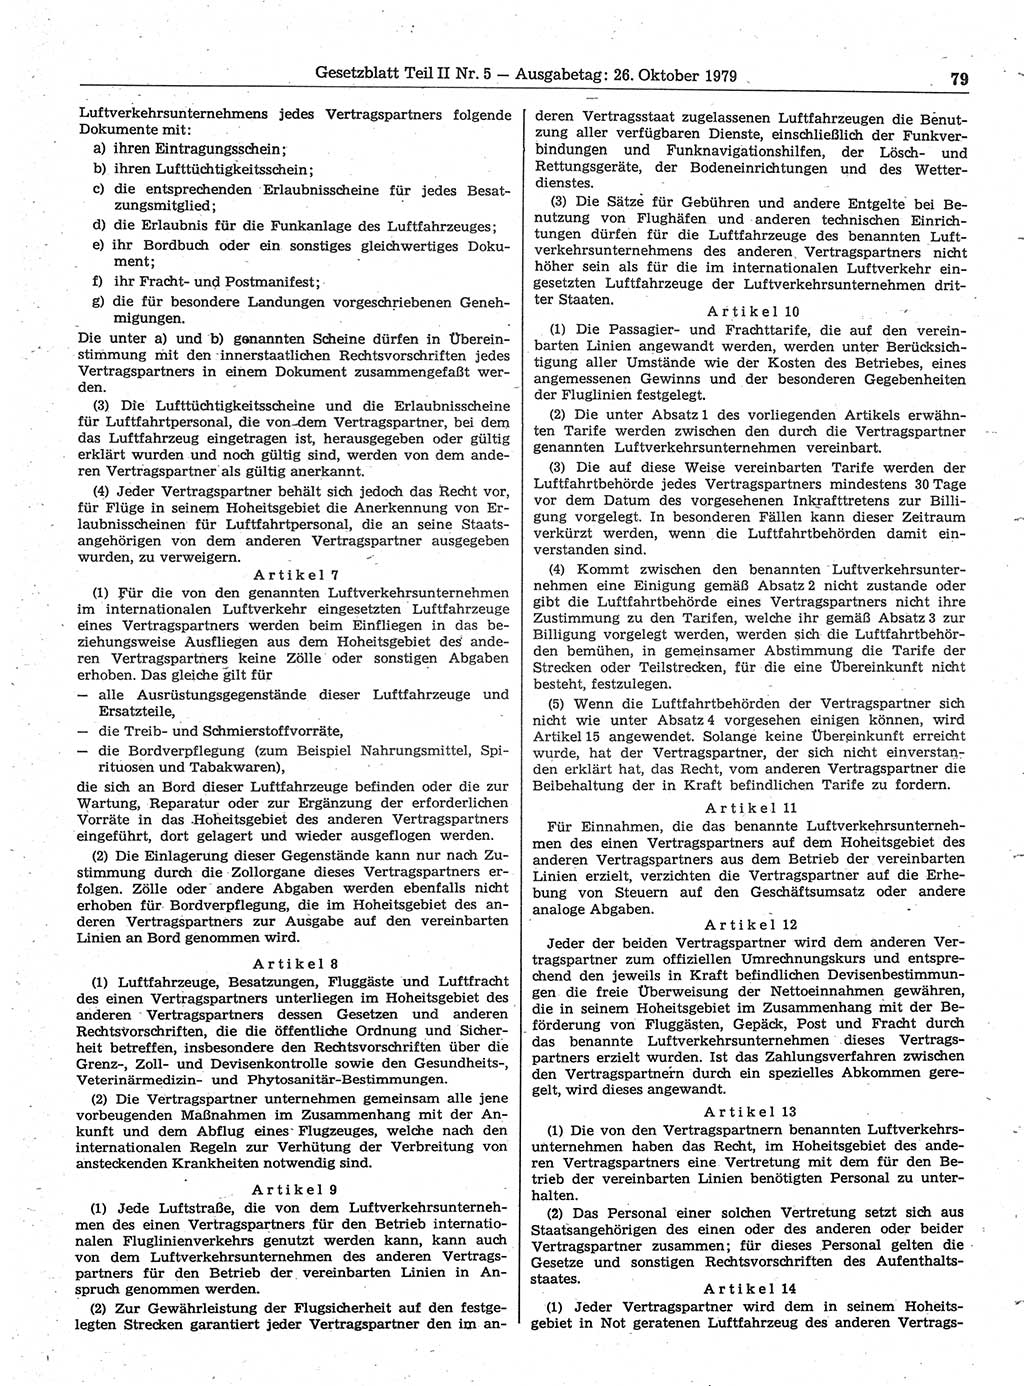 Gesetzblatt (GBl.) der Deutschen Demokratischen Republik (DDR) Teil ⅠⅠ 1979, Seite 79 (GBl. DDR ⅠⅠ 1979, S. 79)